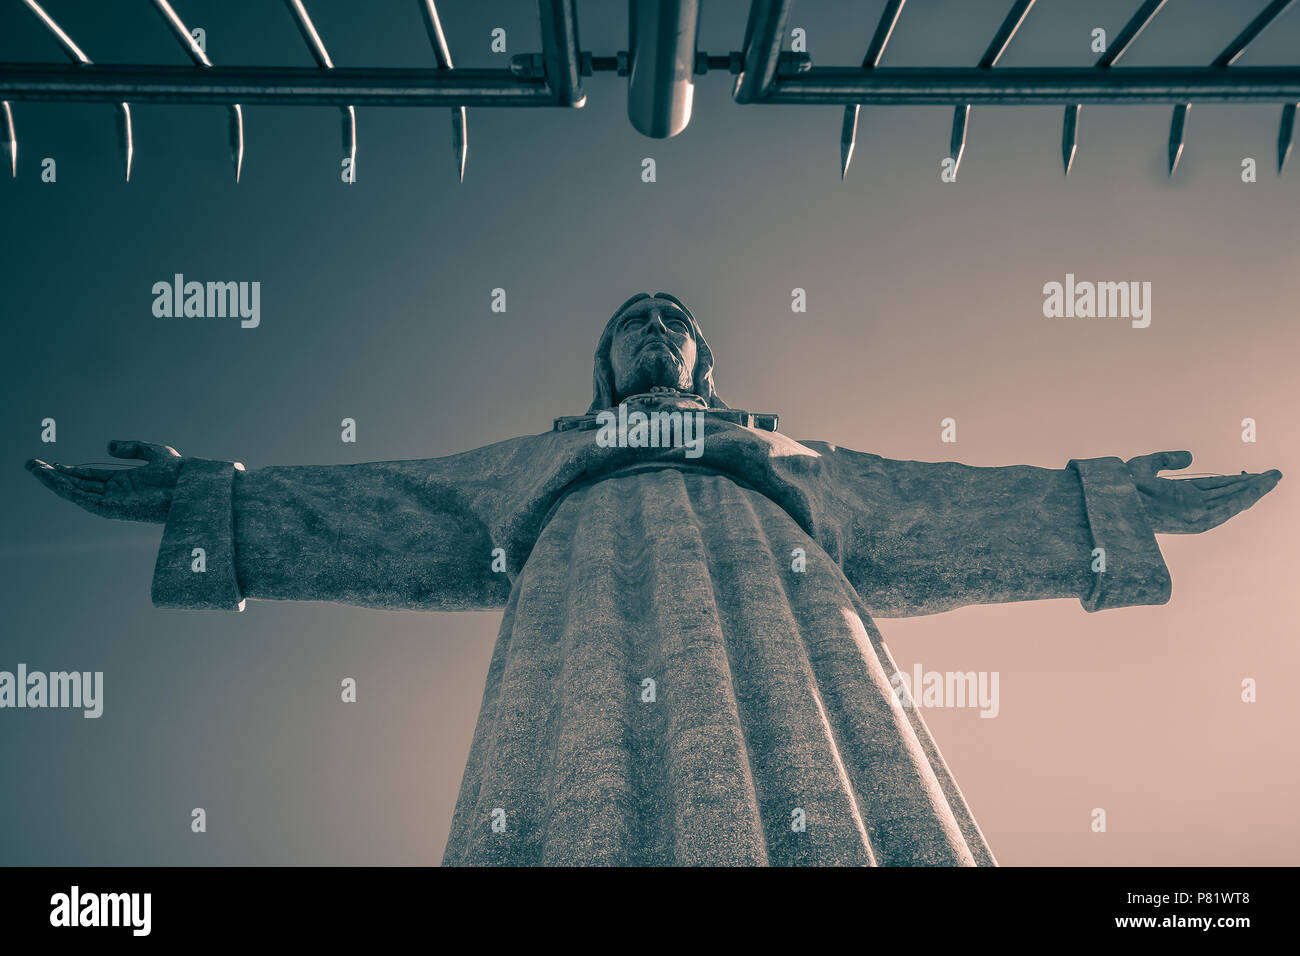 Lisbona, Portogallo. Il monumento Cristo Rei nel quartiere di Almada è alto 103 metri ed è stato inaugurato nel 1959. Foto Stock